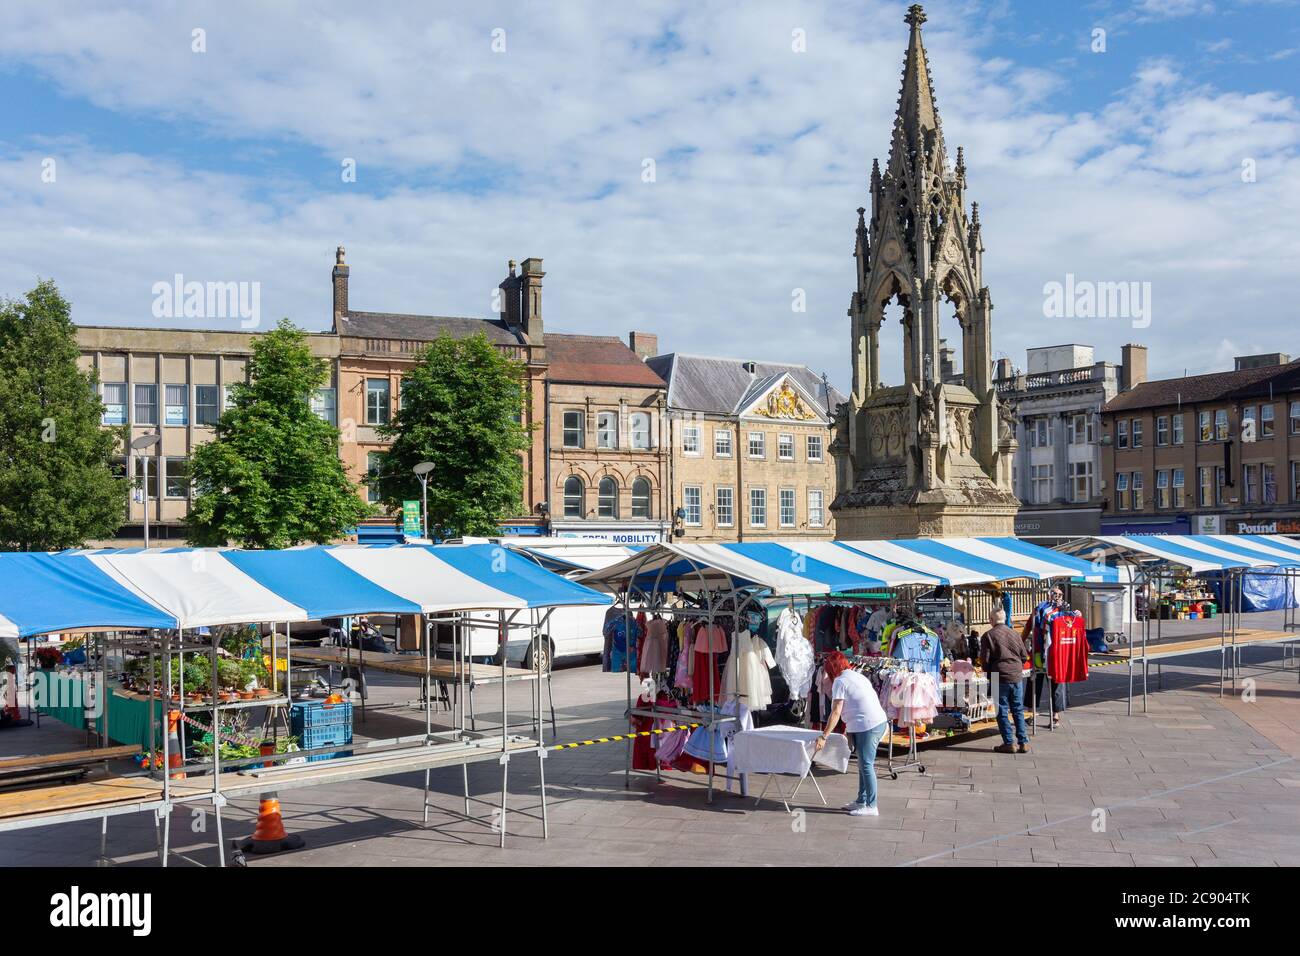 Préparation des étals le jour du marché, Market Square, Mansfield, Notinghamshire, Angleterre, Royaume-Uni Banque D'Images